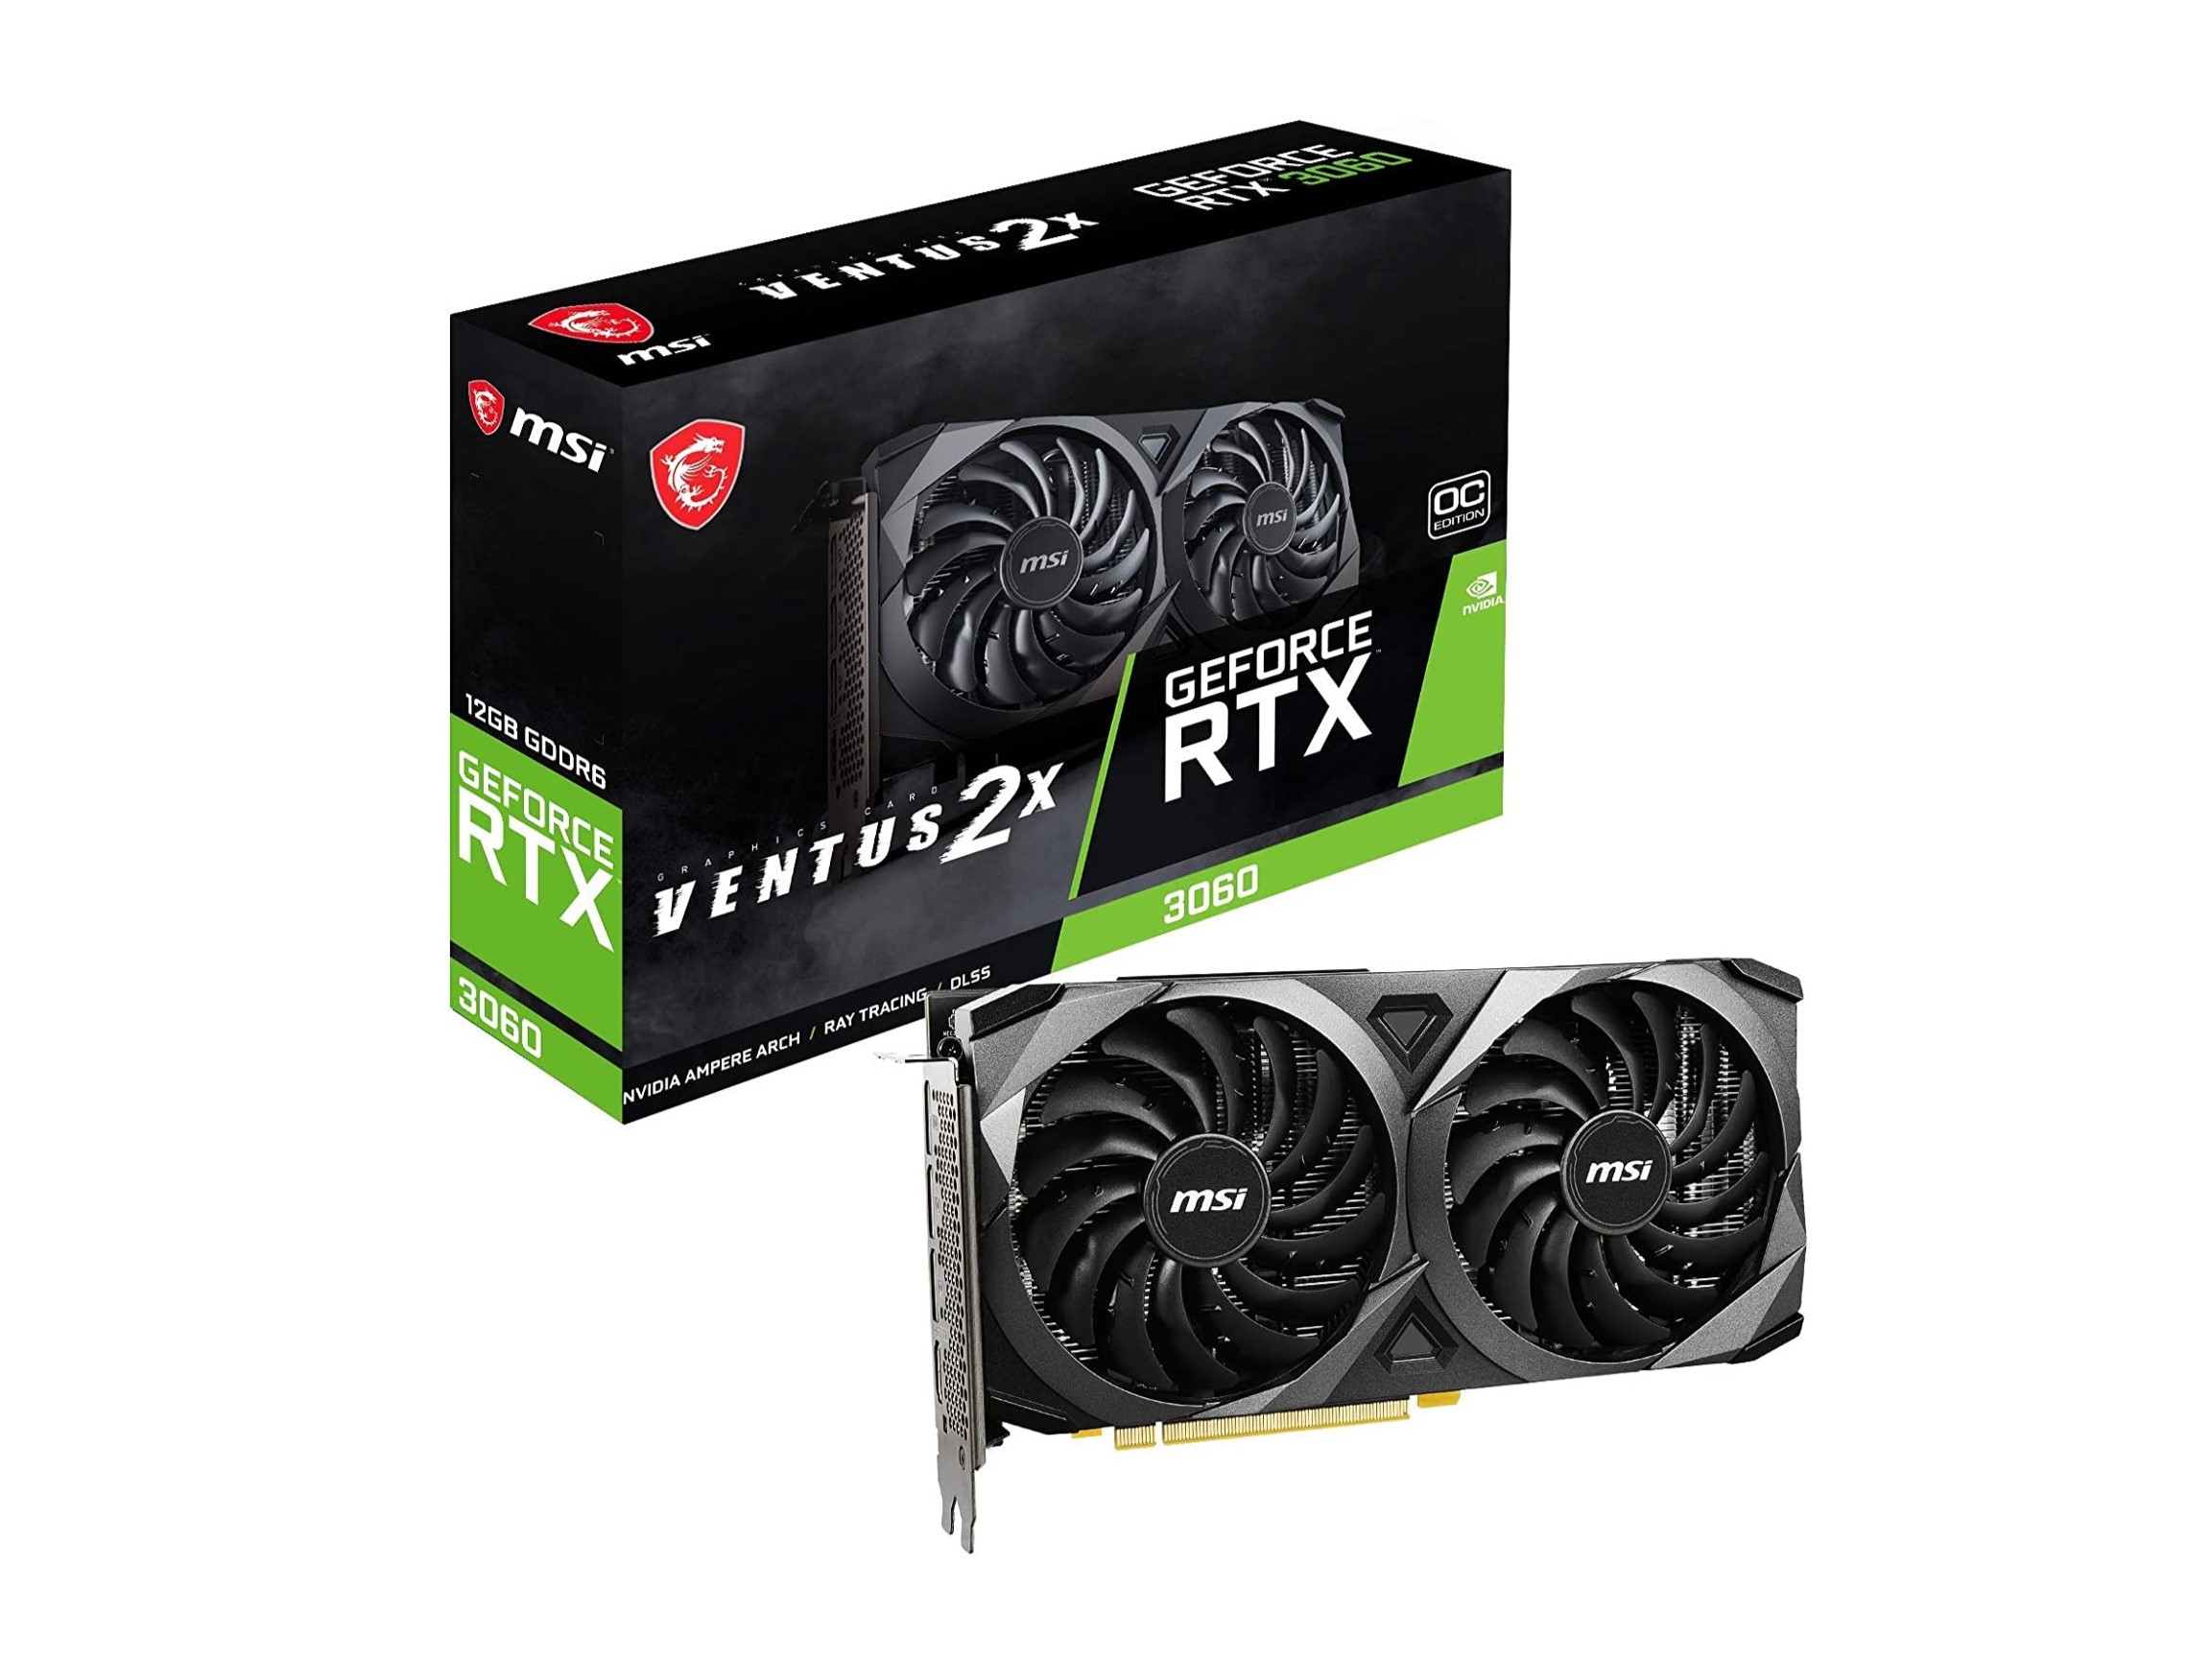 Best GPU deals: Get an RTX 3060 for under $300 | Digital Trends